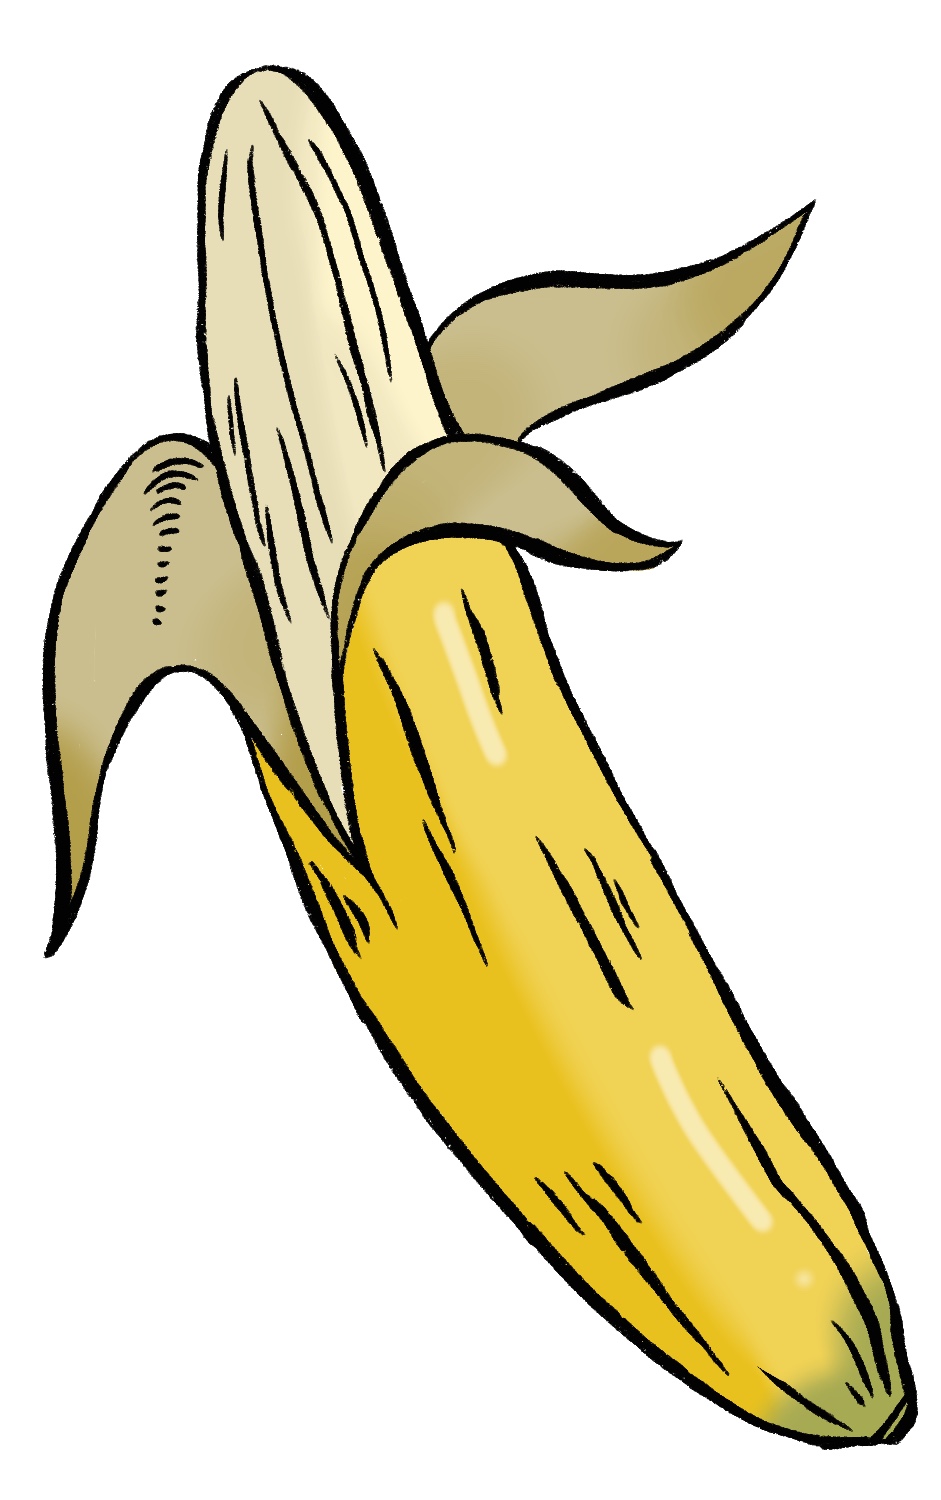 How to make Banana Drawing/ 3D Banana Sketch using Pencil Colors - YouTube